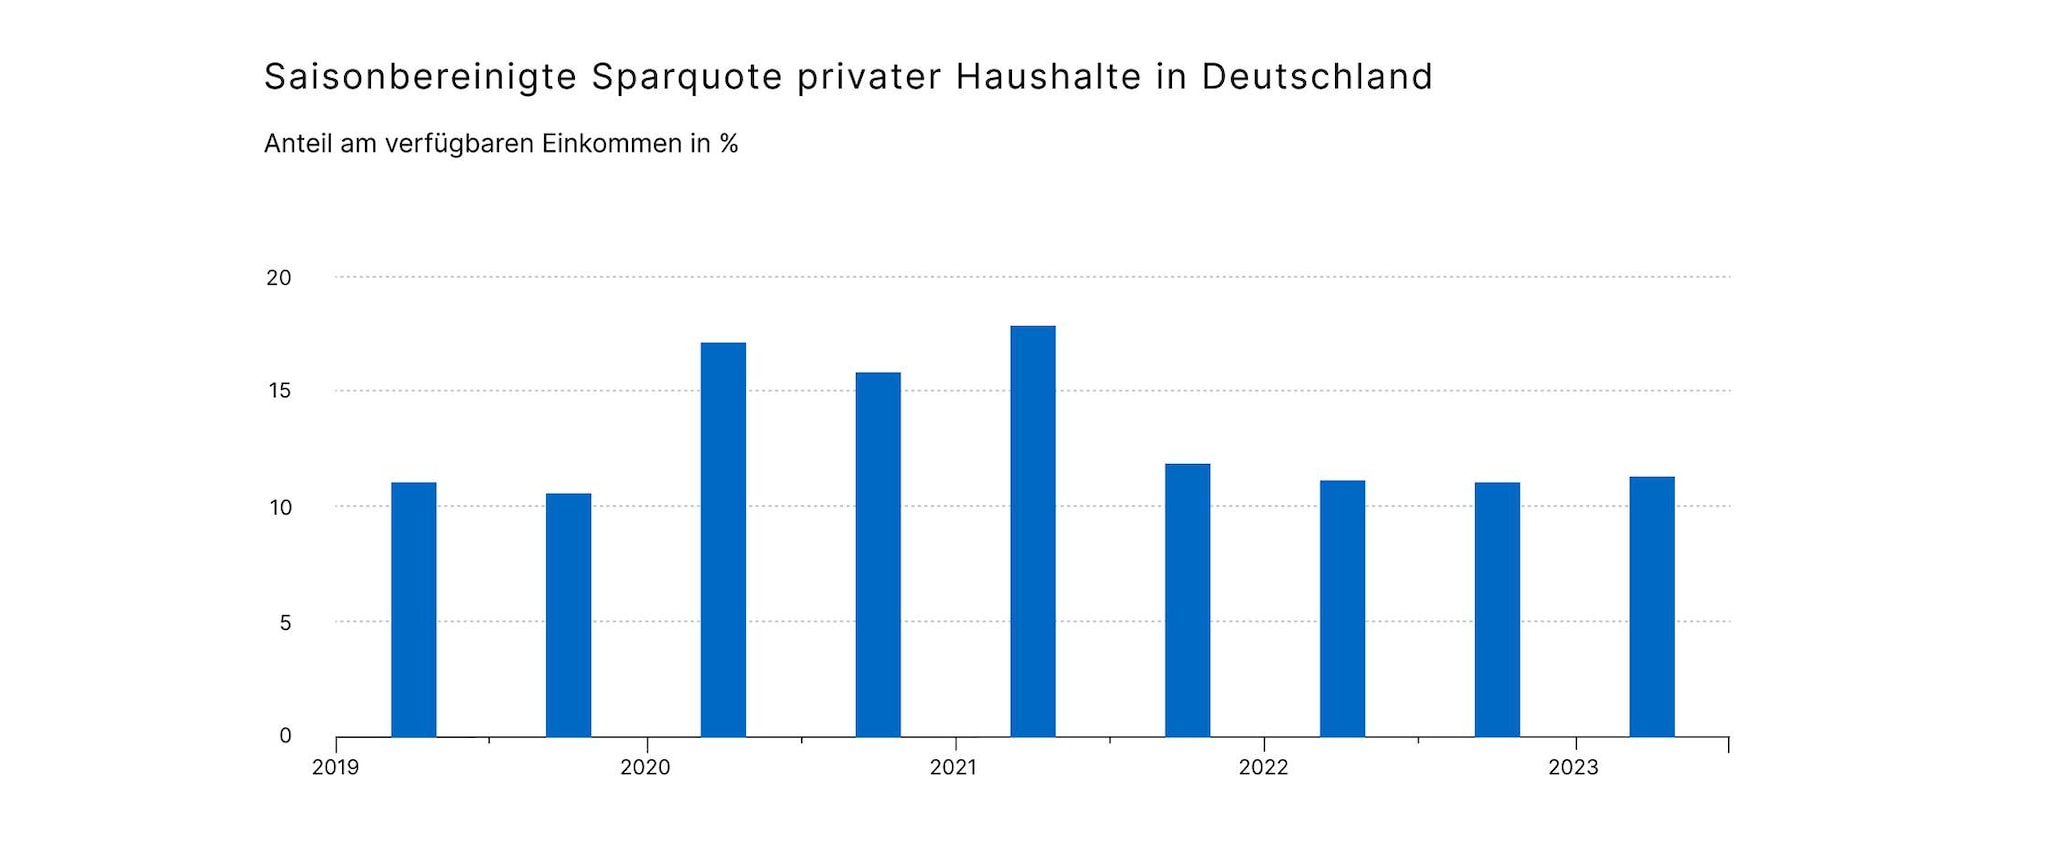 10006-1 Saisonbereinigte Sparquote privater Haushalte in Deutschland_936x2240